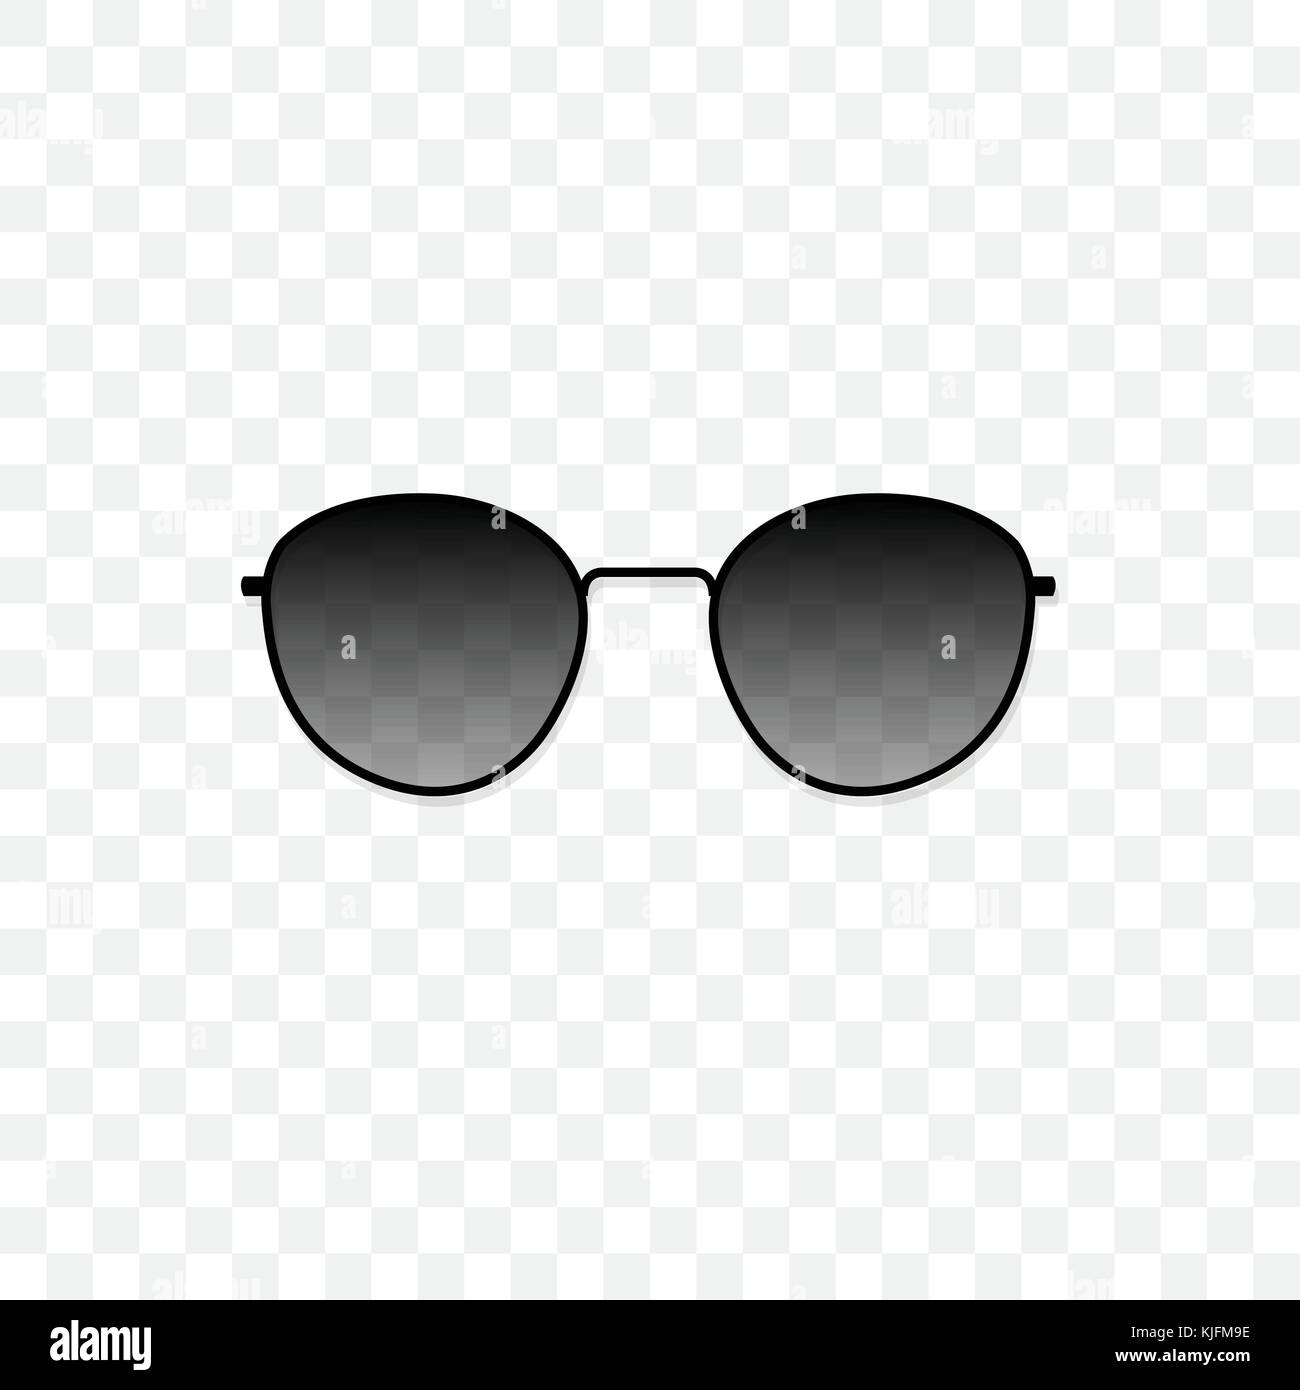 Realistische Sonnenbrille mit einer durchsichtigen Glas schwarz auf transparentem Hintergrund. Schutz vor Sonne und UV-Strahlen. modeaccessoire Vector Illustration. Stock Vektor